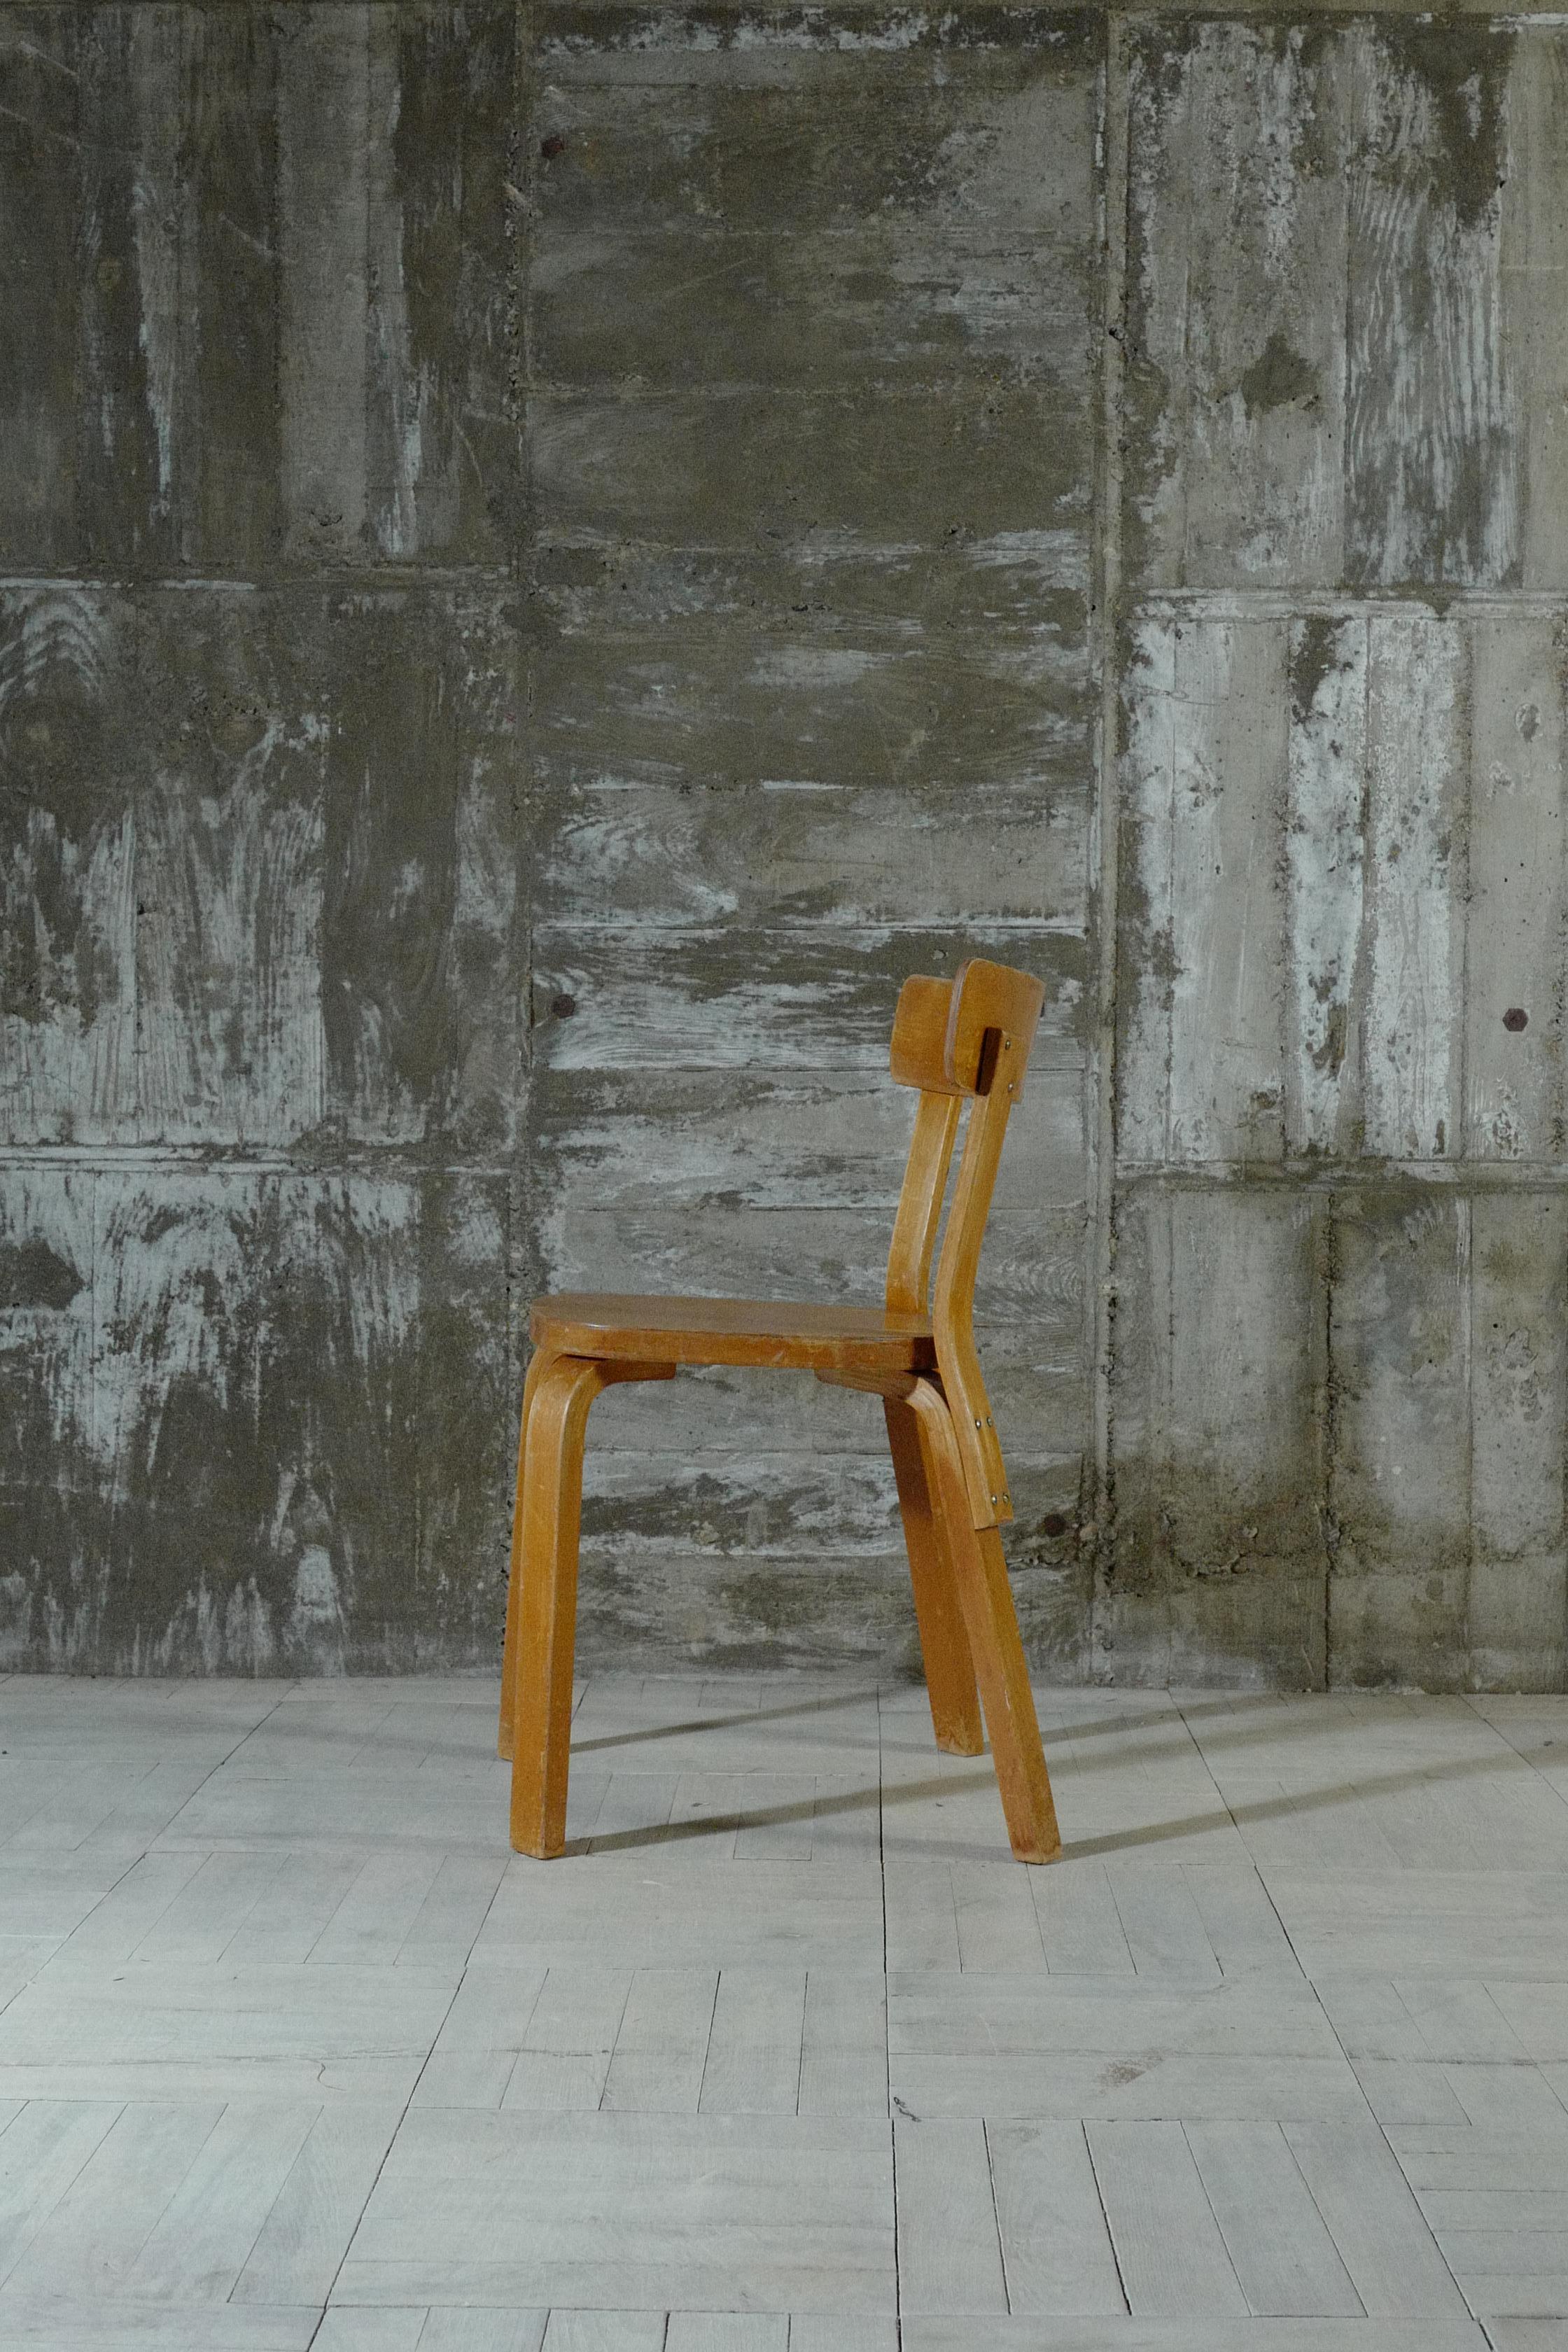 Entworfen von Alvar Aalto.
Dieser Stuhl 69 wurde in den 1930er Jahren hergestellt.
Es hat eine Struktur, die ein frühes Produkt zu sein scheint, das in aktuellen Produkten nicht zu finden ist.
Der Farbfilm aus dieser Zeit ist noch vorhanden.
An